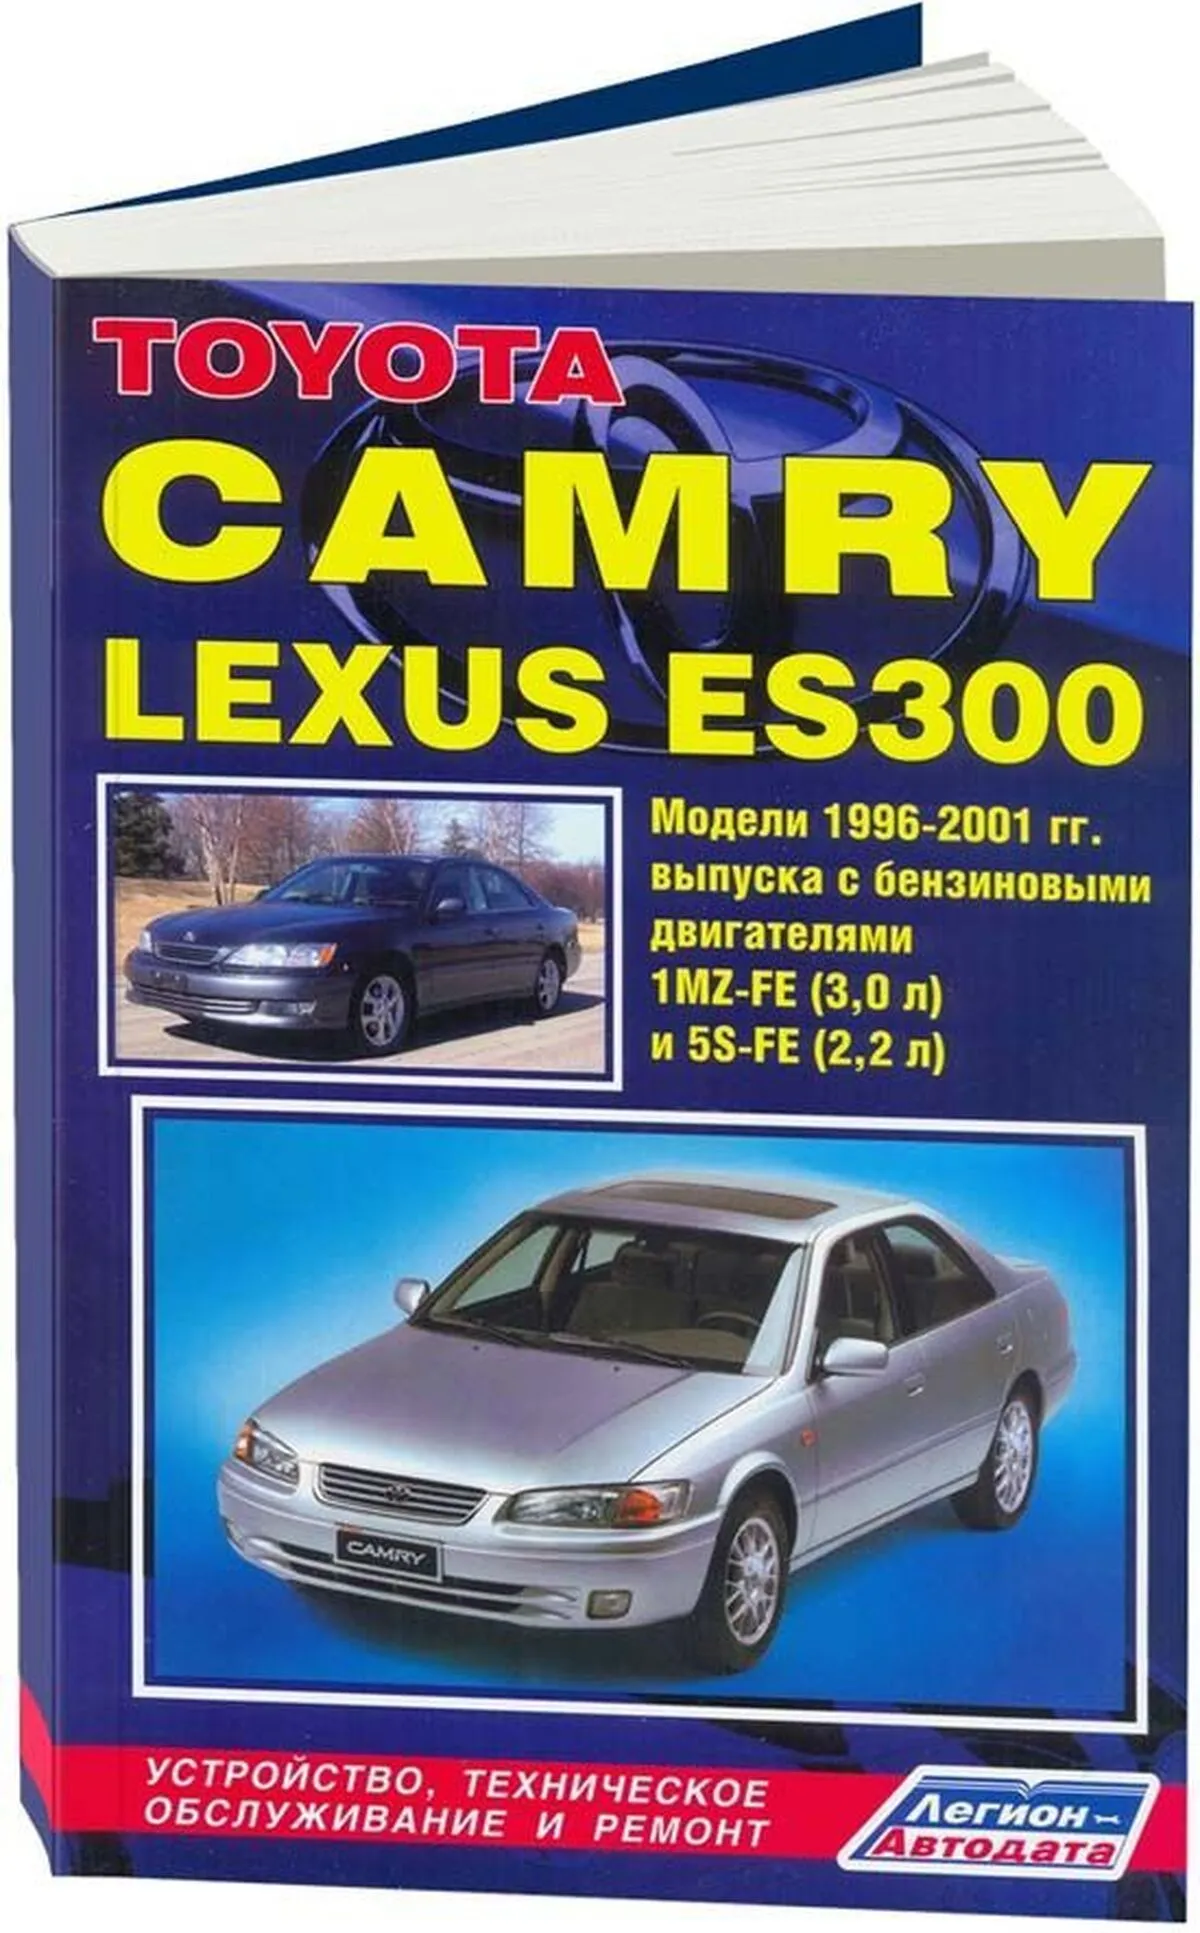 Книга: TOYOTA CAMRY / LEXUS ES300 (б) 1996-2001 г.в., рем., экспл., то | Легион-Aвтодата